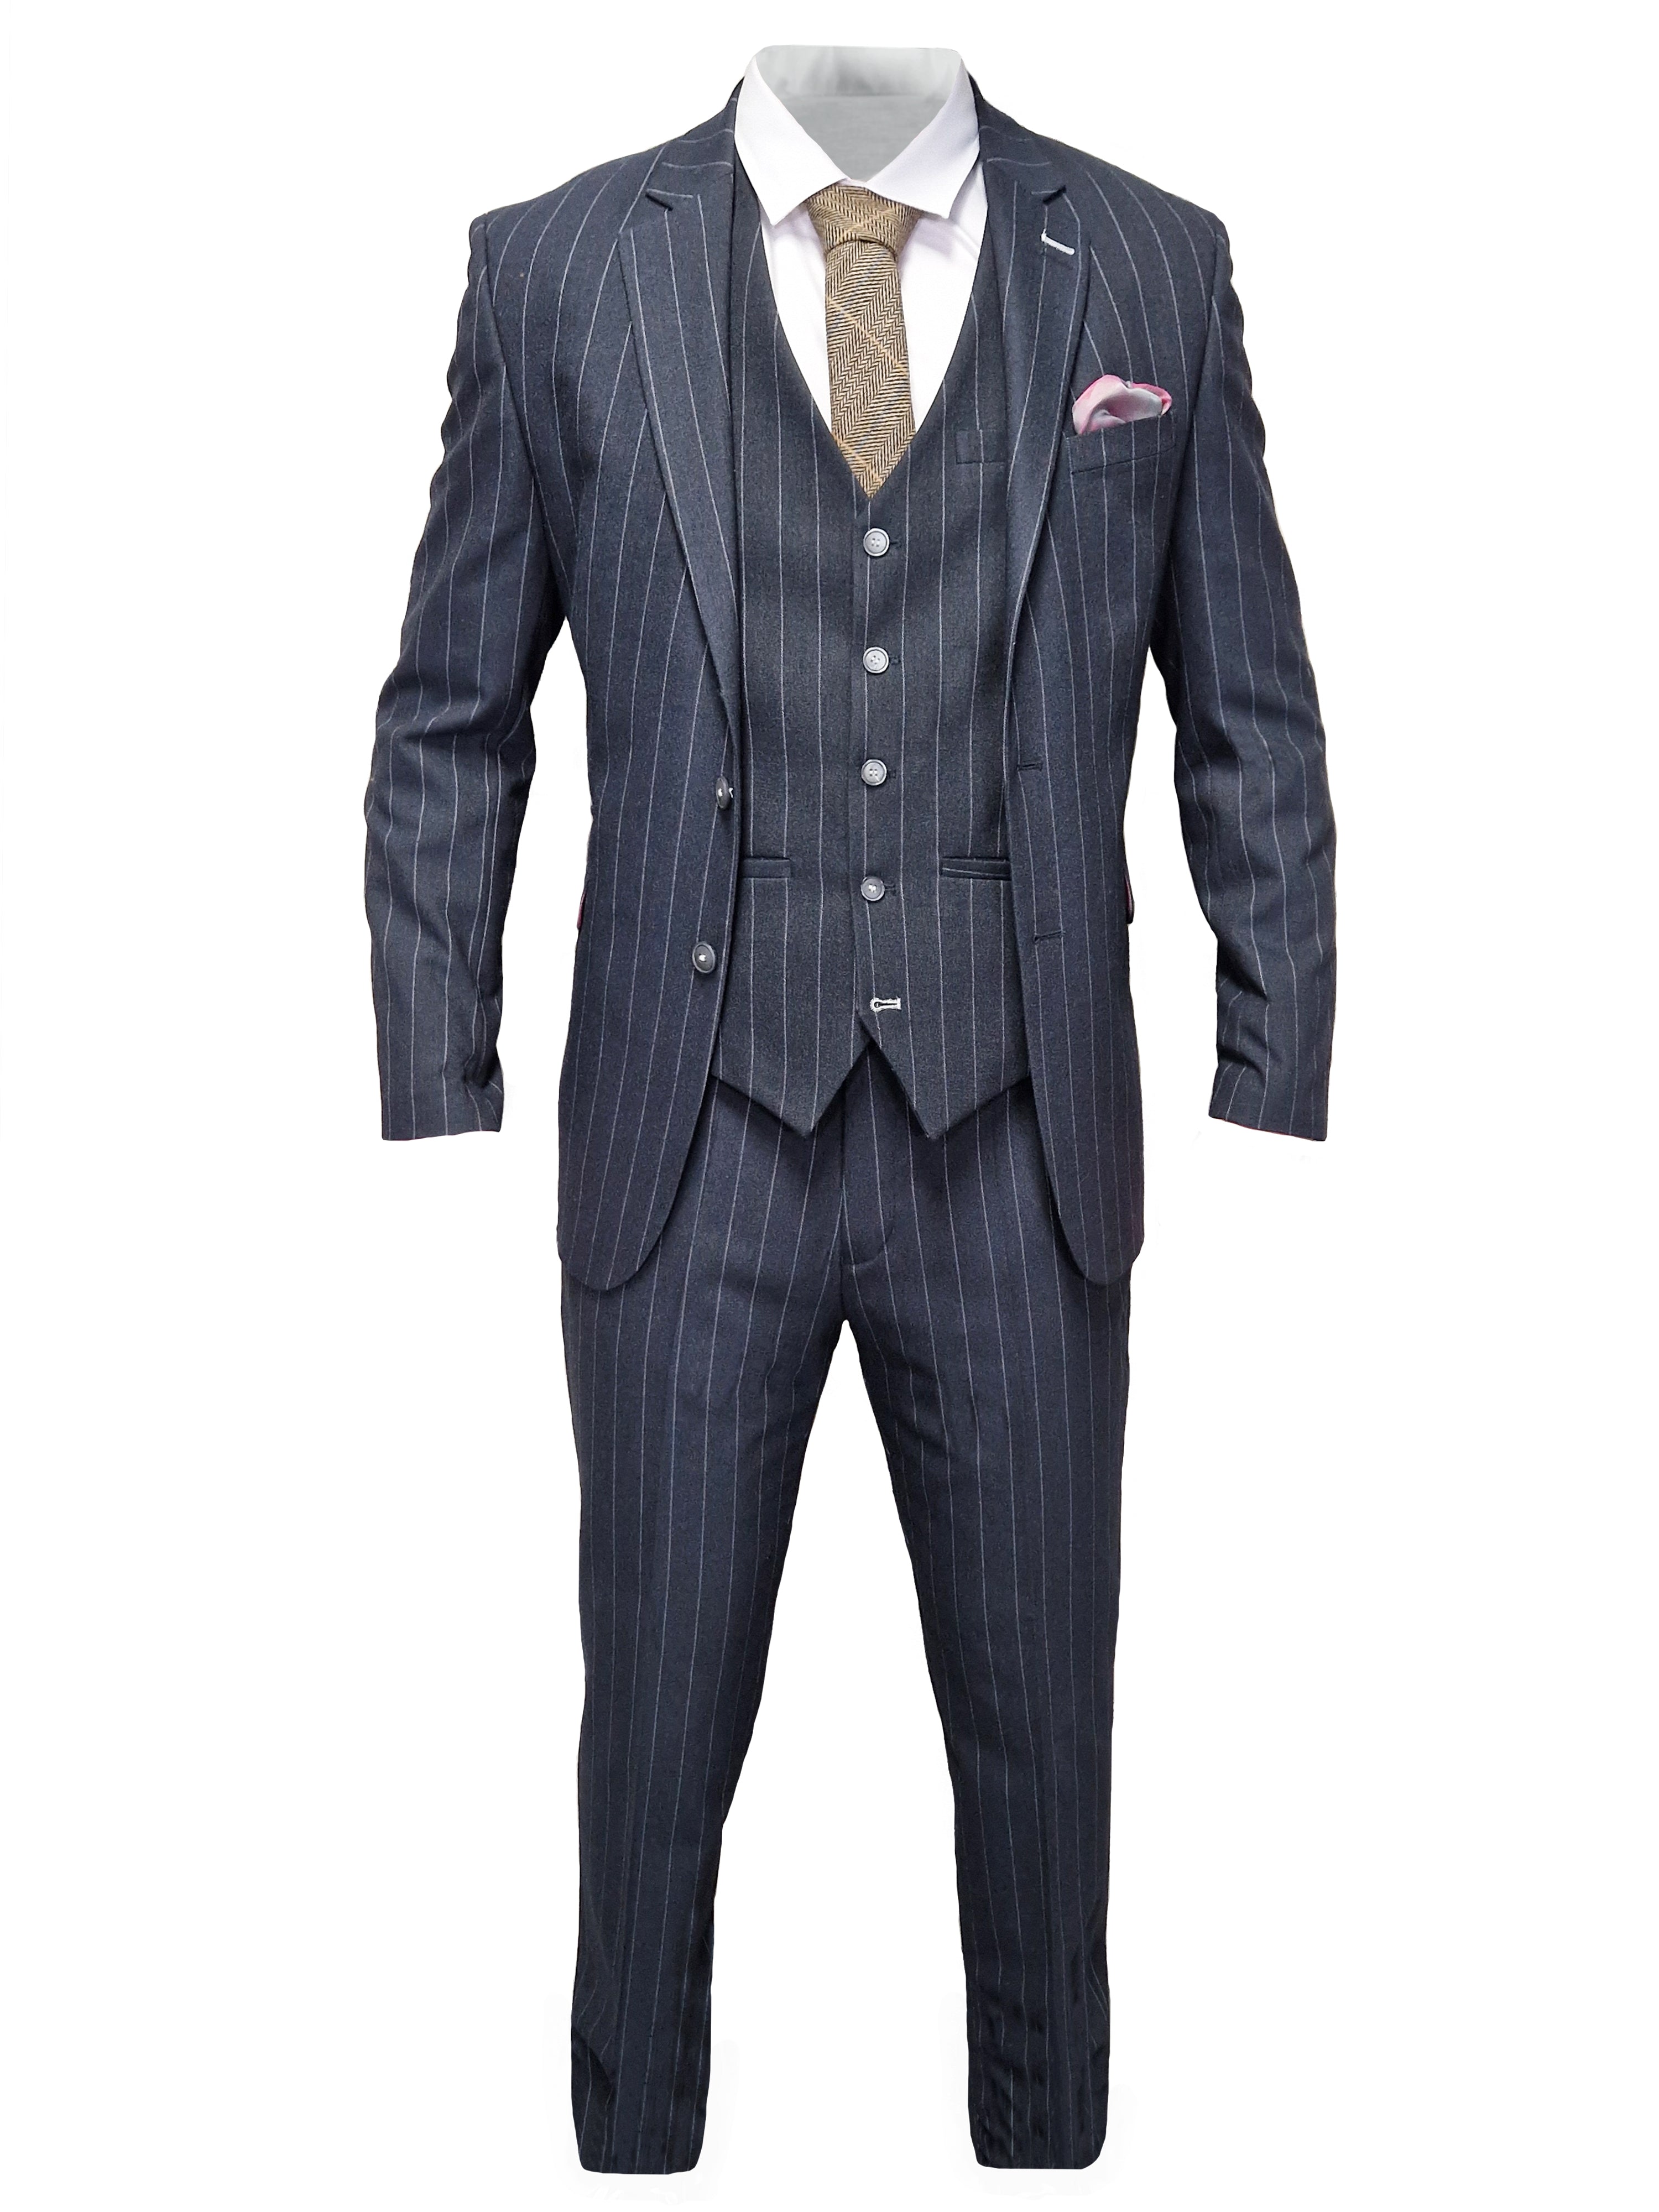 Navy Blue Striped Suit for Men - Cavani Invincible Suit